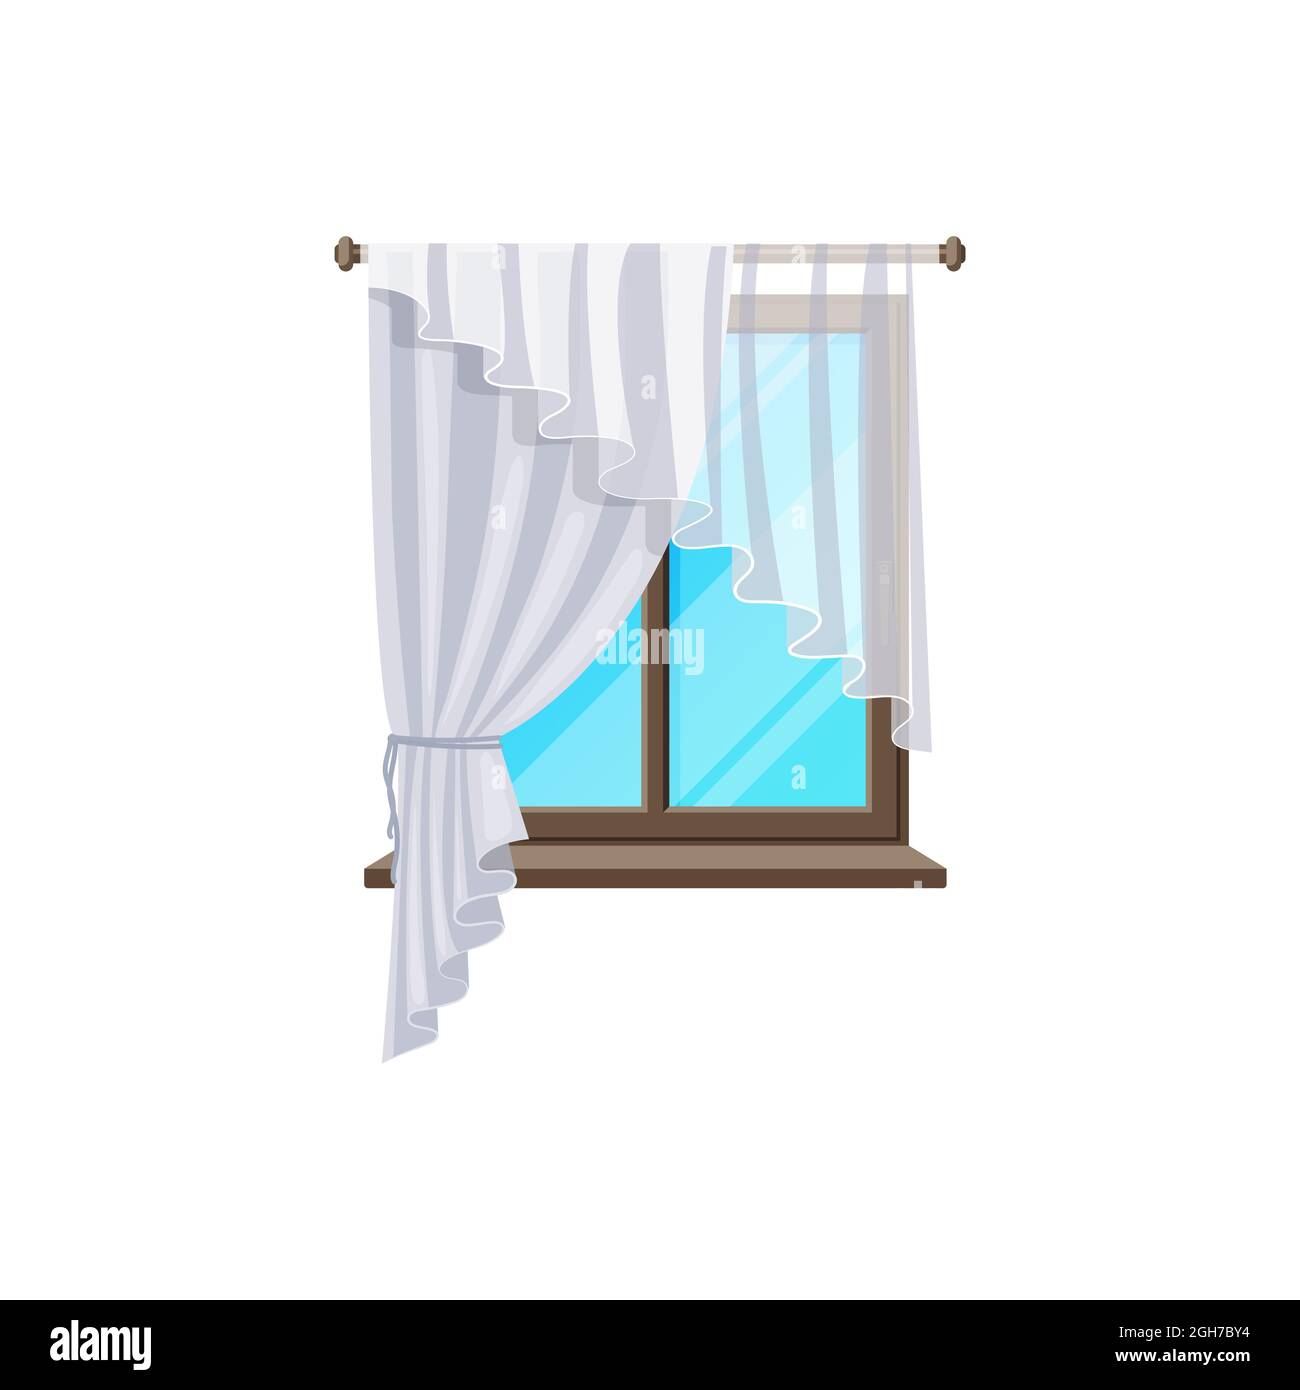 Stores de rideau de fenêtre sur cadre en verre plat, champ intérieur  vectoriel de couleur blanche rétro ou tulle de drapery transparent avec  plis. Fenêtre en bois avec rebord de fenêtre et